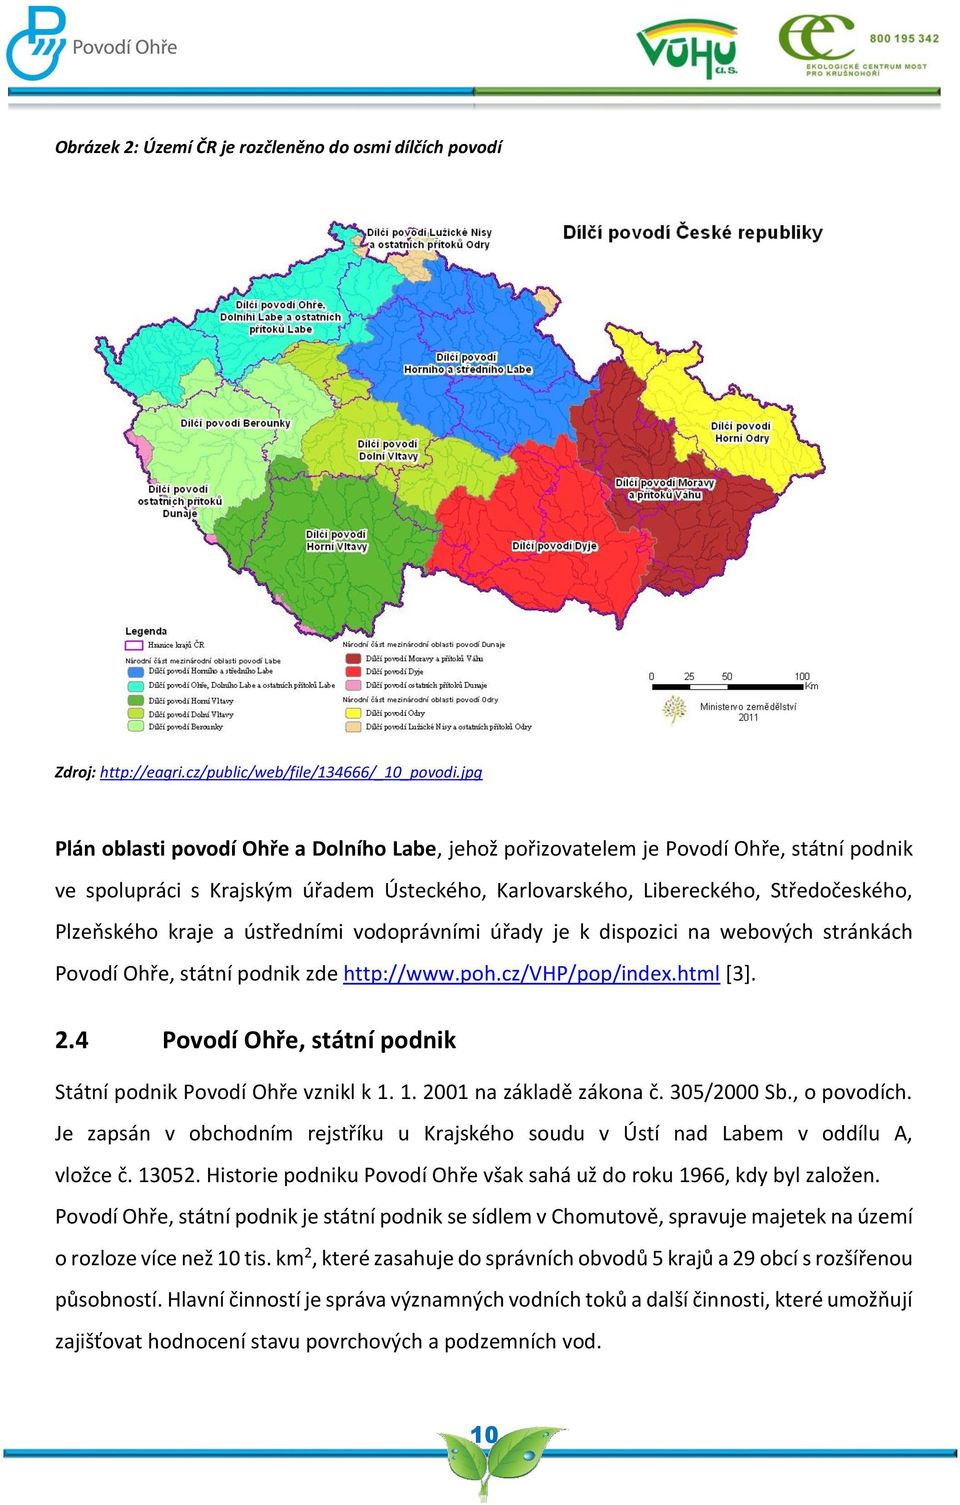 ústředními vodoprávními úřady je k dispozici na webových stránkách Povodí Ohře, státní podnik zde http://www.poh.cz/vhp/pop/index.html [3]. 2.